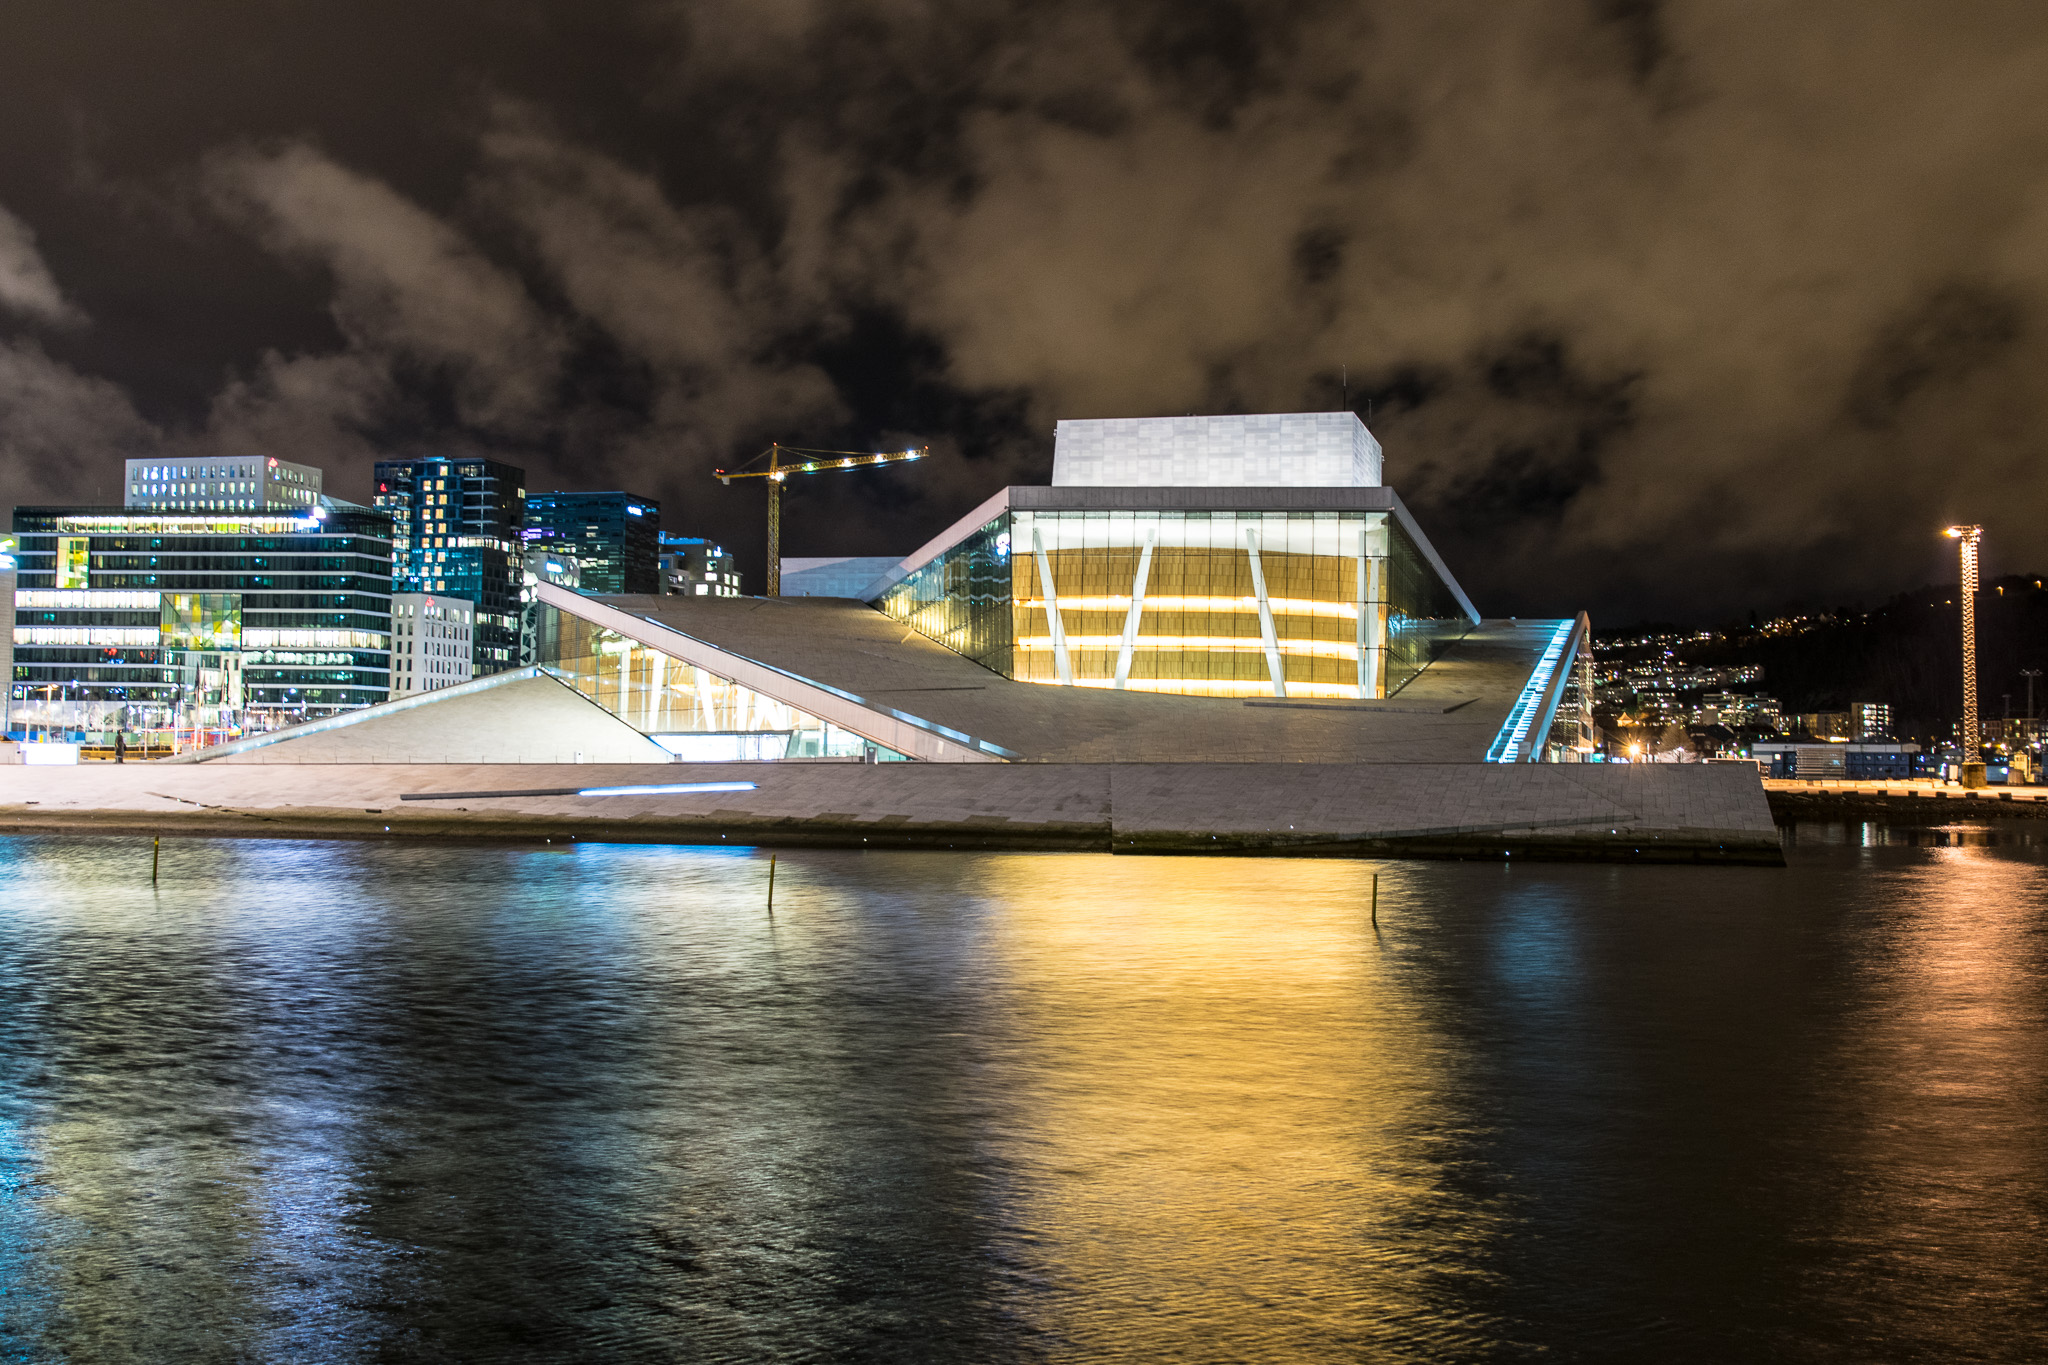 Oslo Opera at night